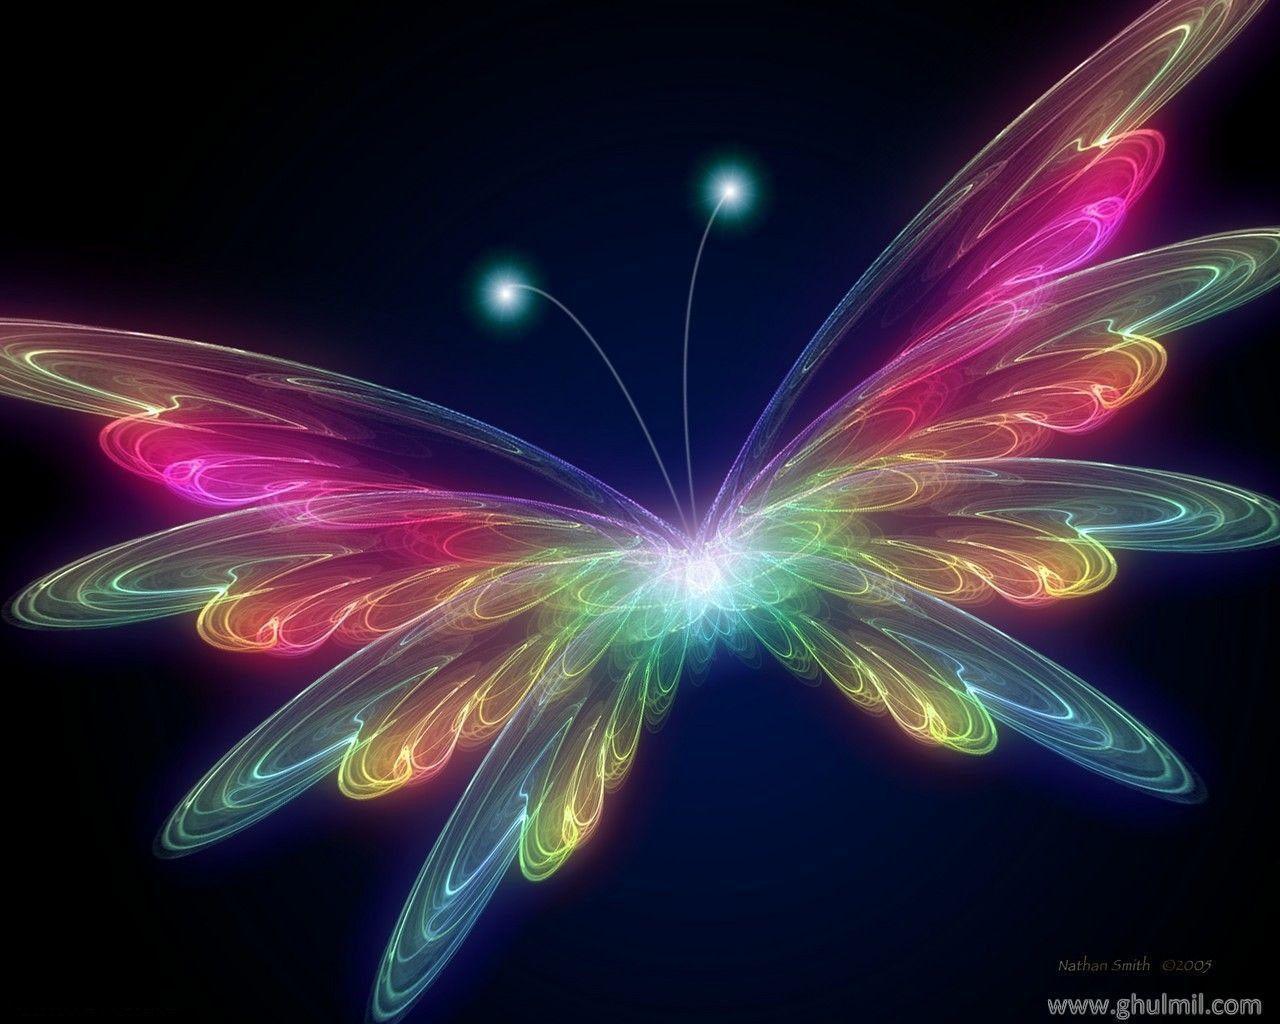 Most Beautiful Butterflies Wallpaper